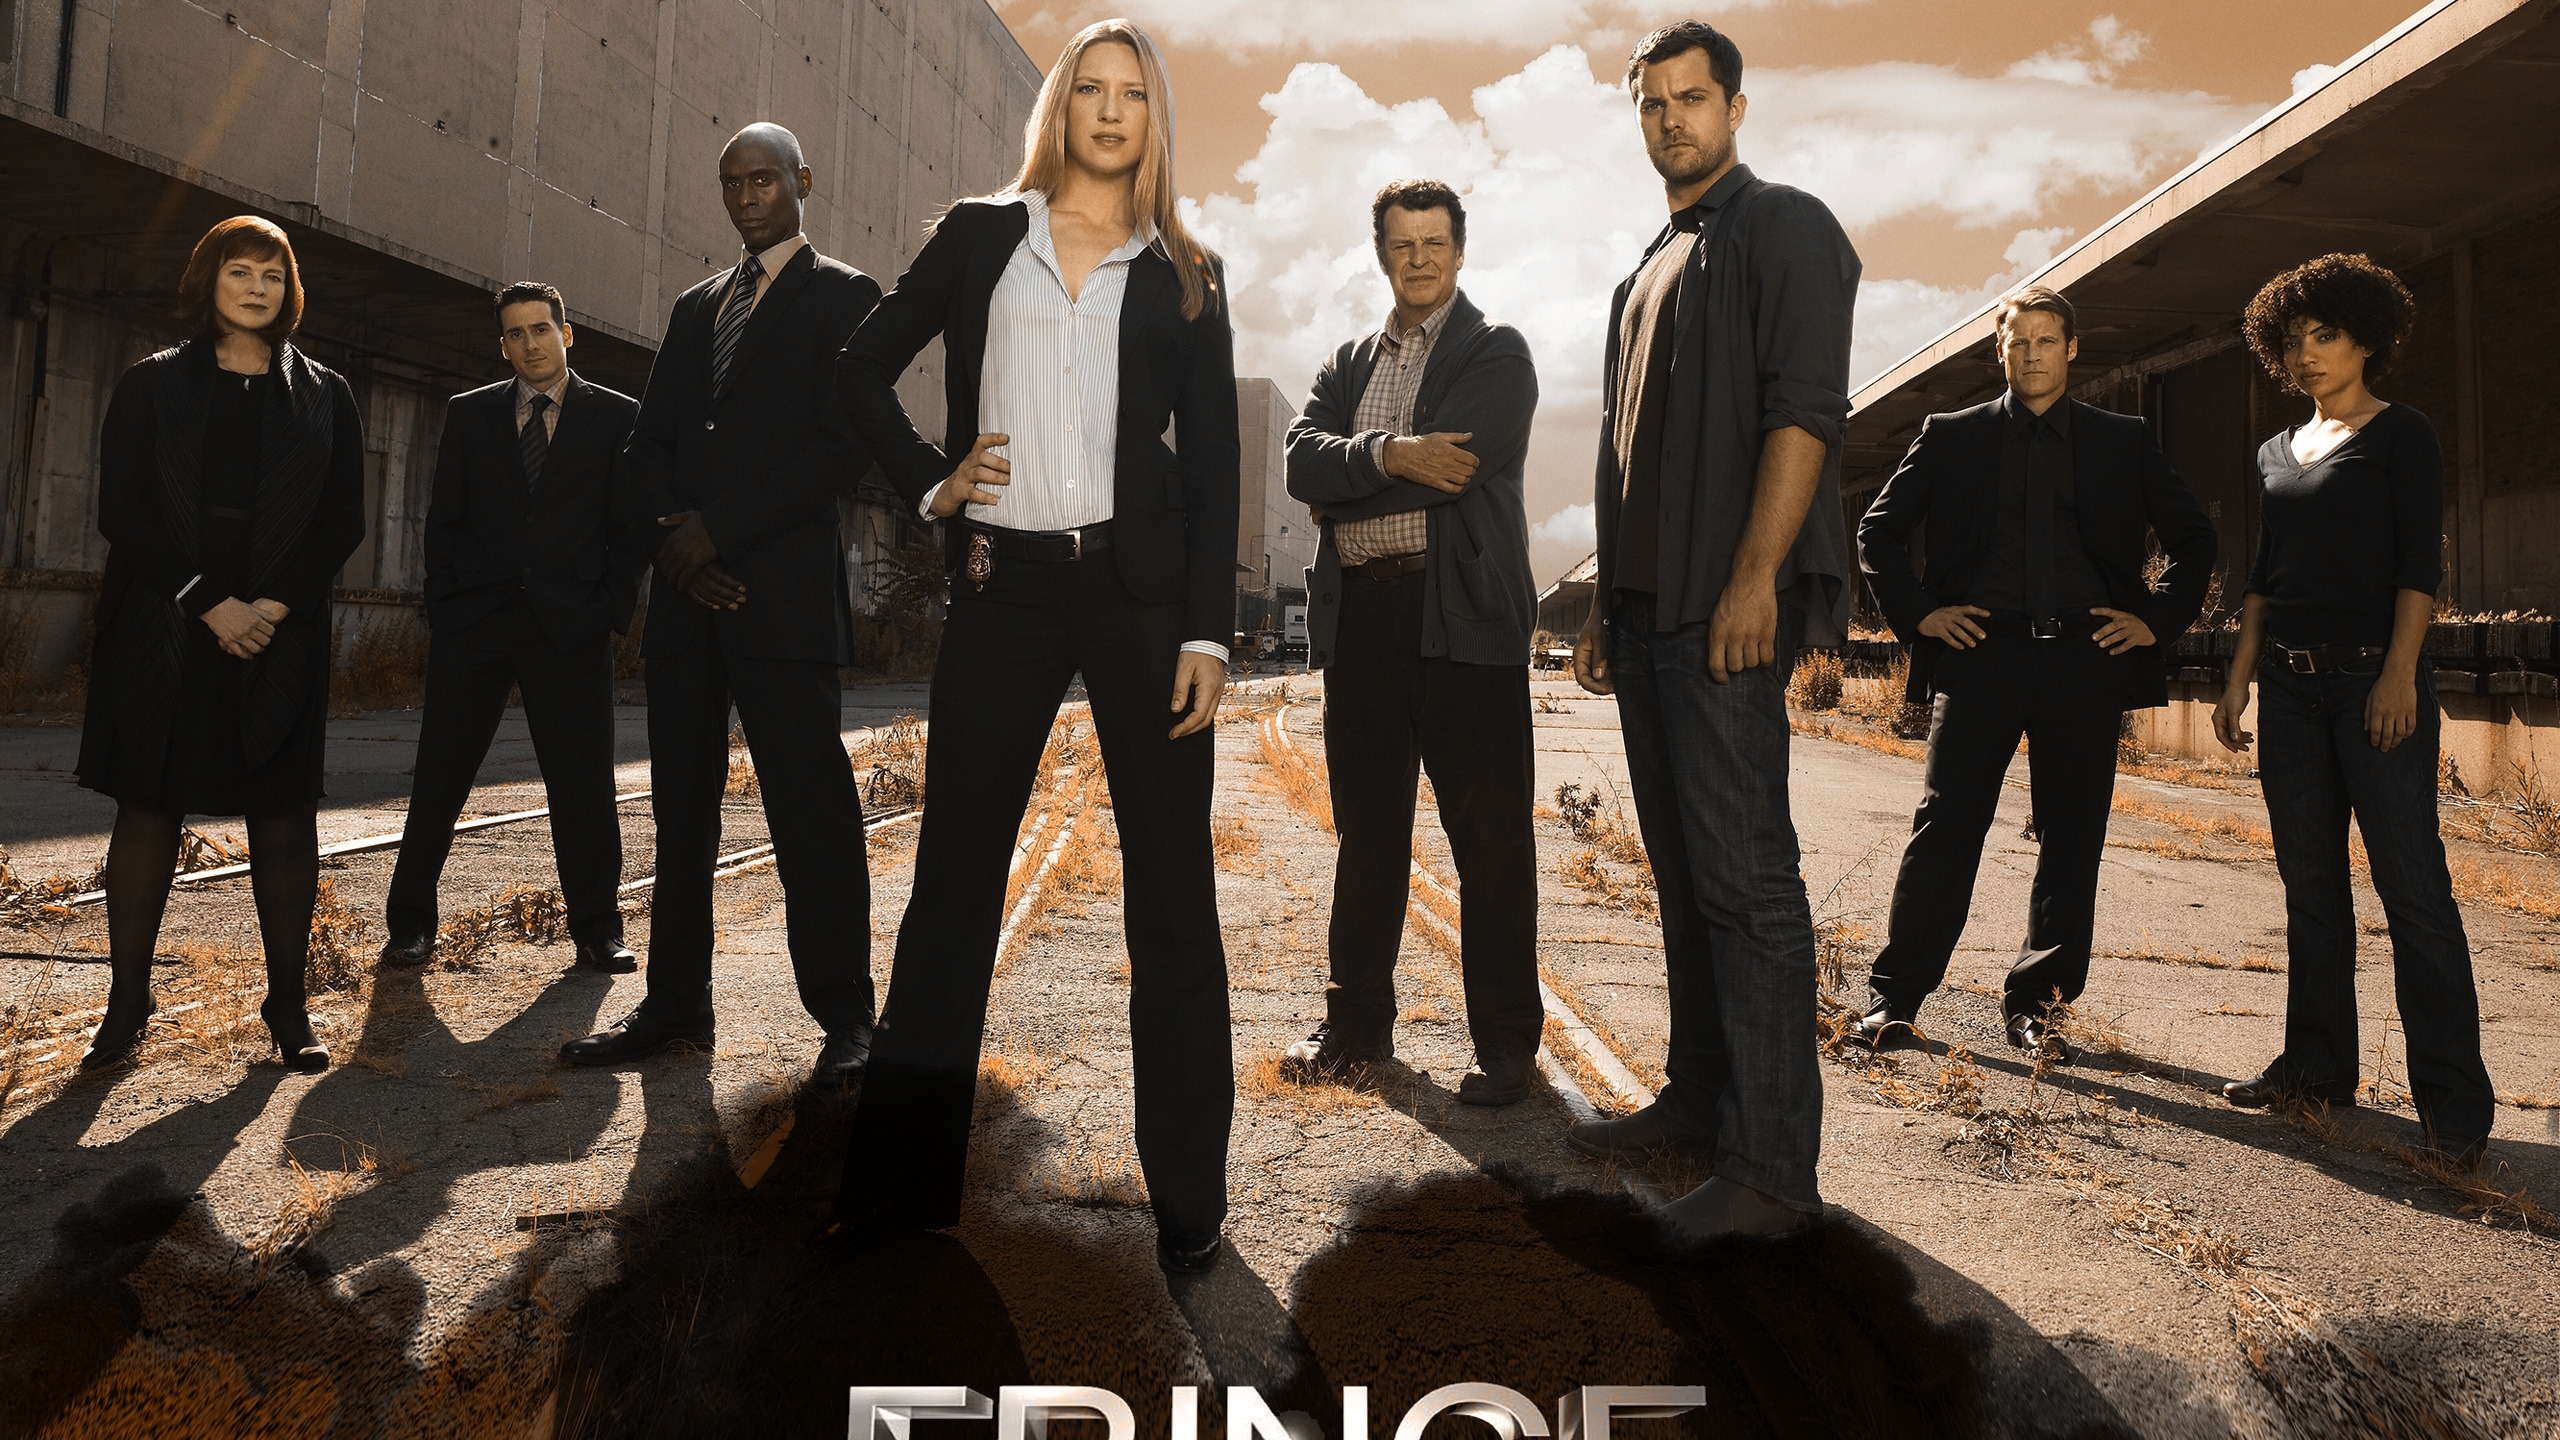 Fringe TV Series for 2560x1440 HDTV resolution